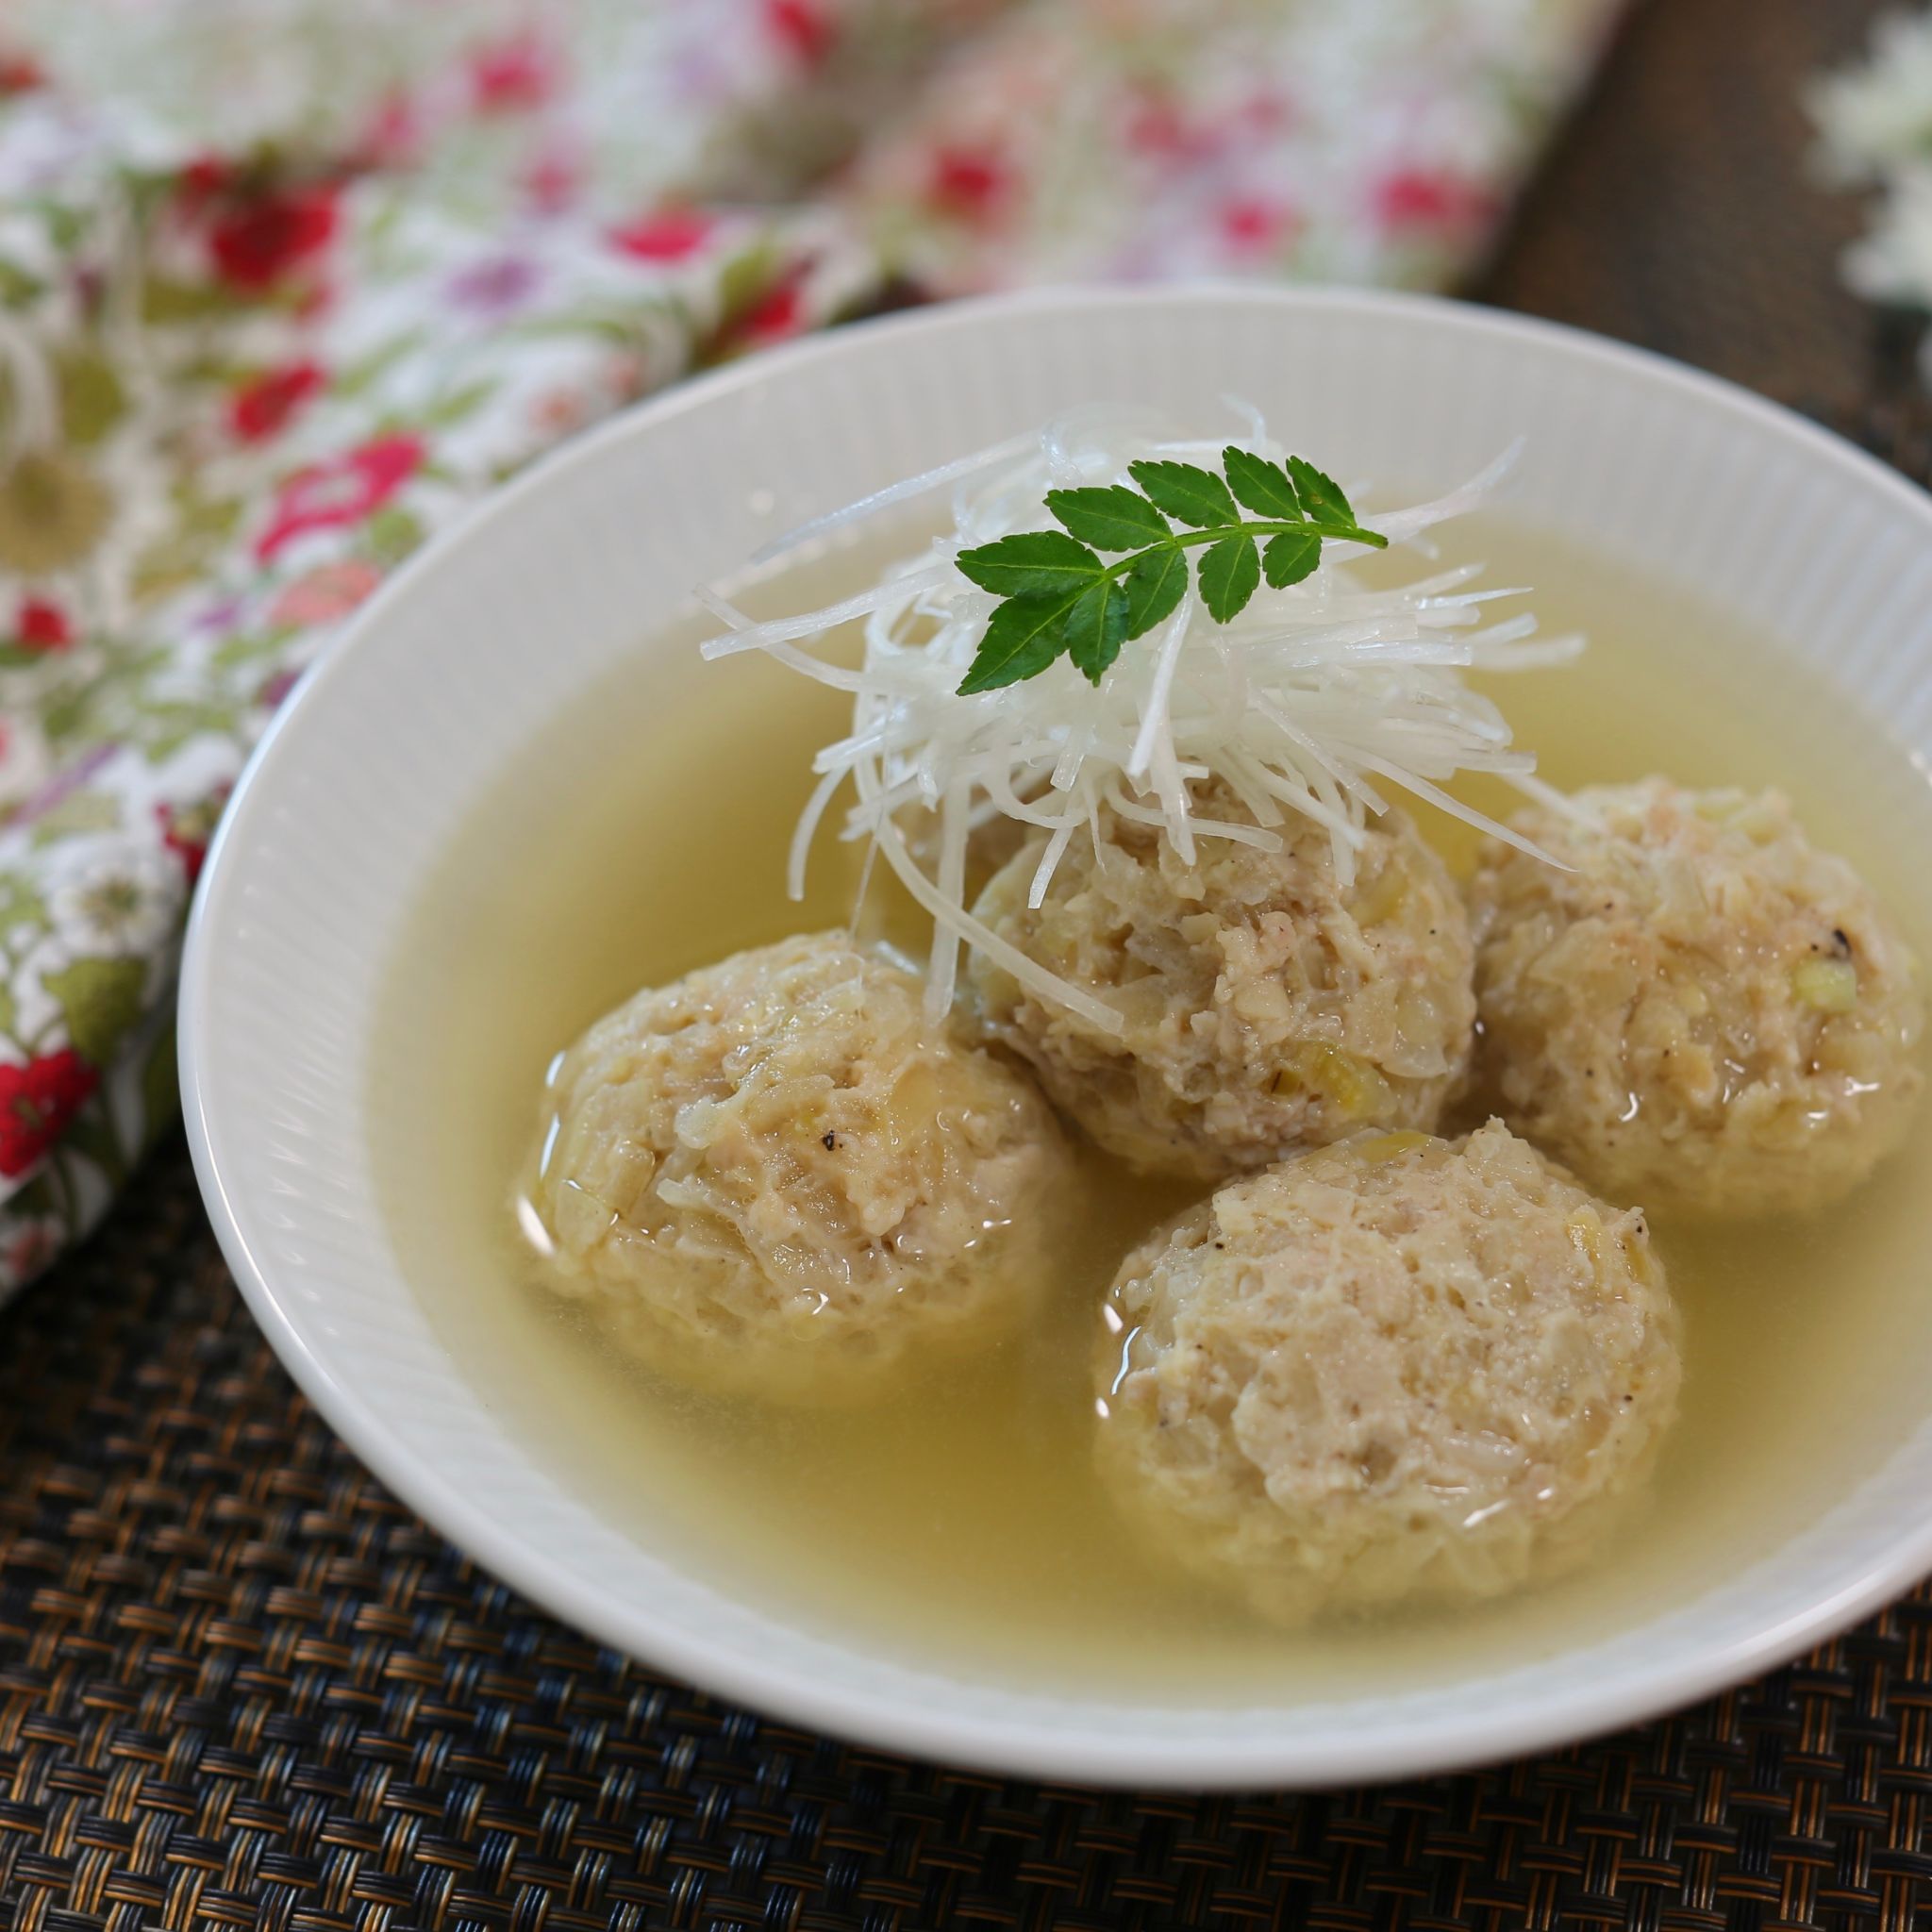 鶏団子スープのレシピ 広末涼子さんのおすすめ やまでら くみこ のレシピ